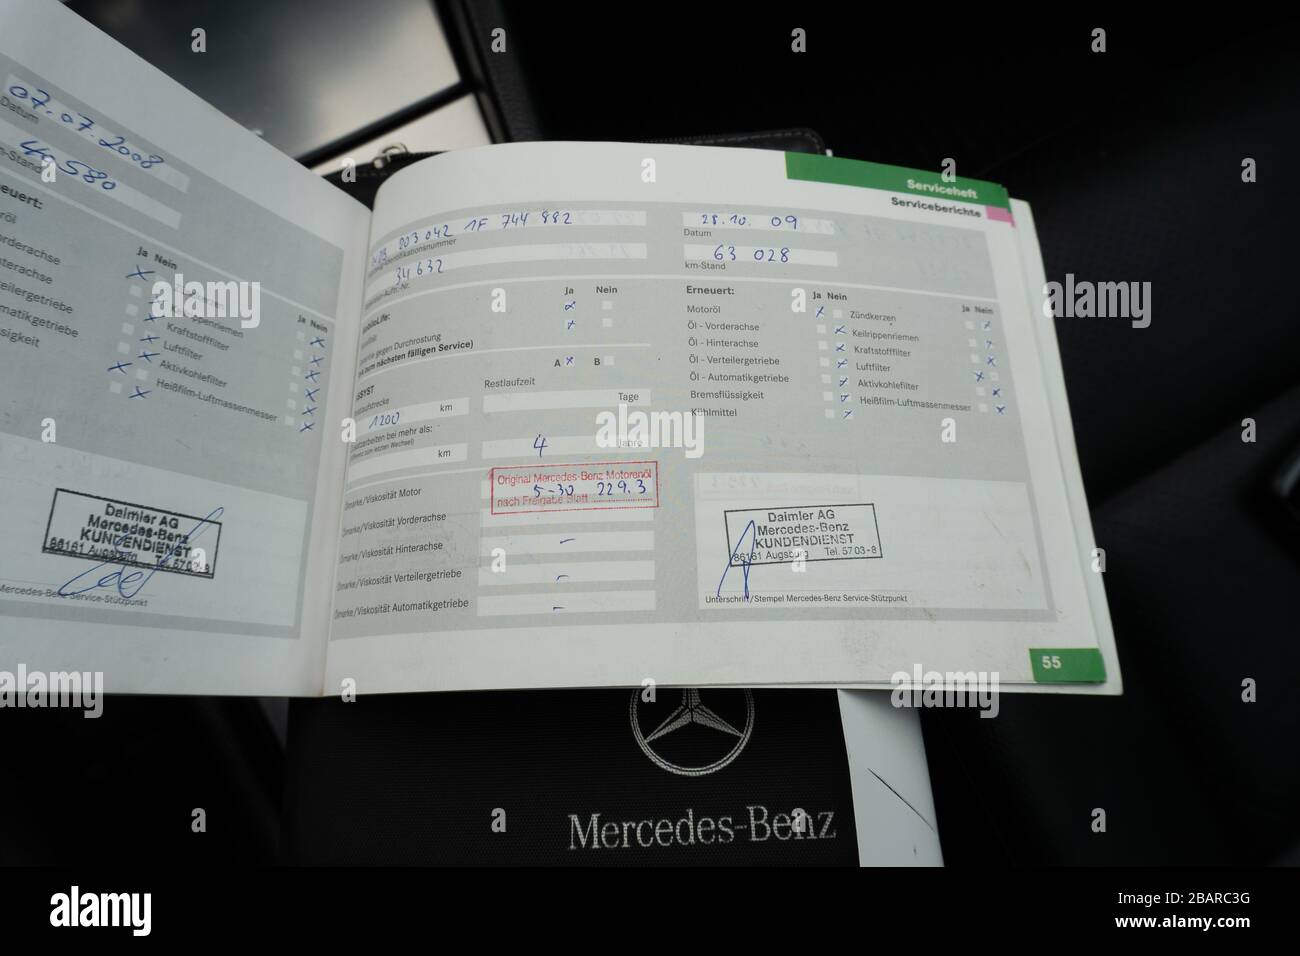 Historique d'entretien Mercedes Benz : entretien programmé, vérification des défauts du moteur, réparations et enregistrements d'entretien Banque D'Images